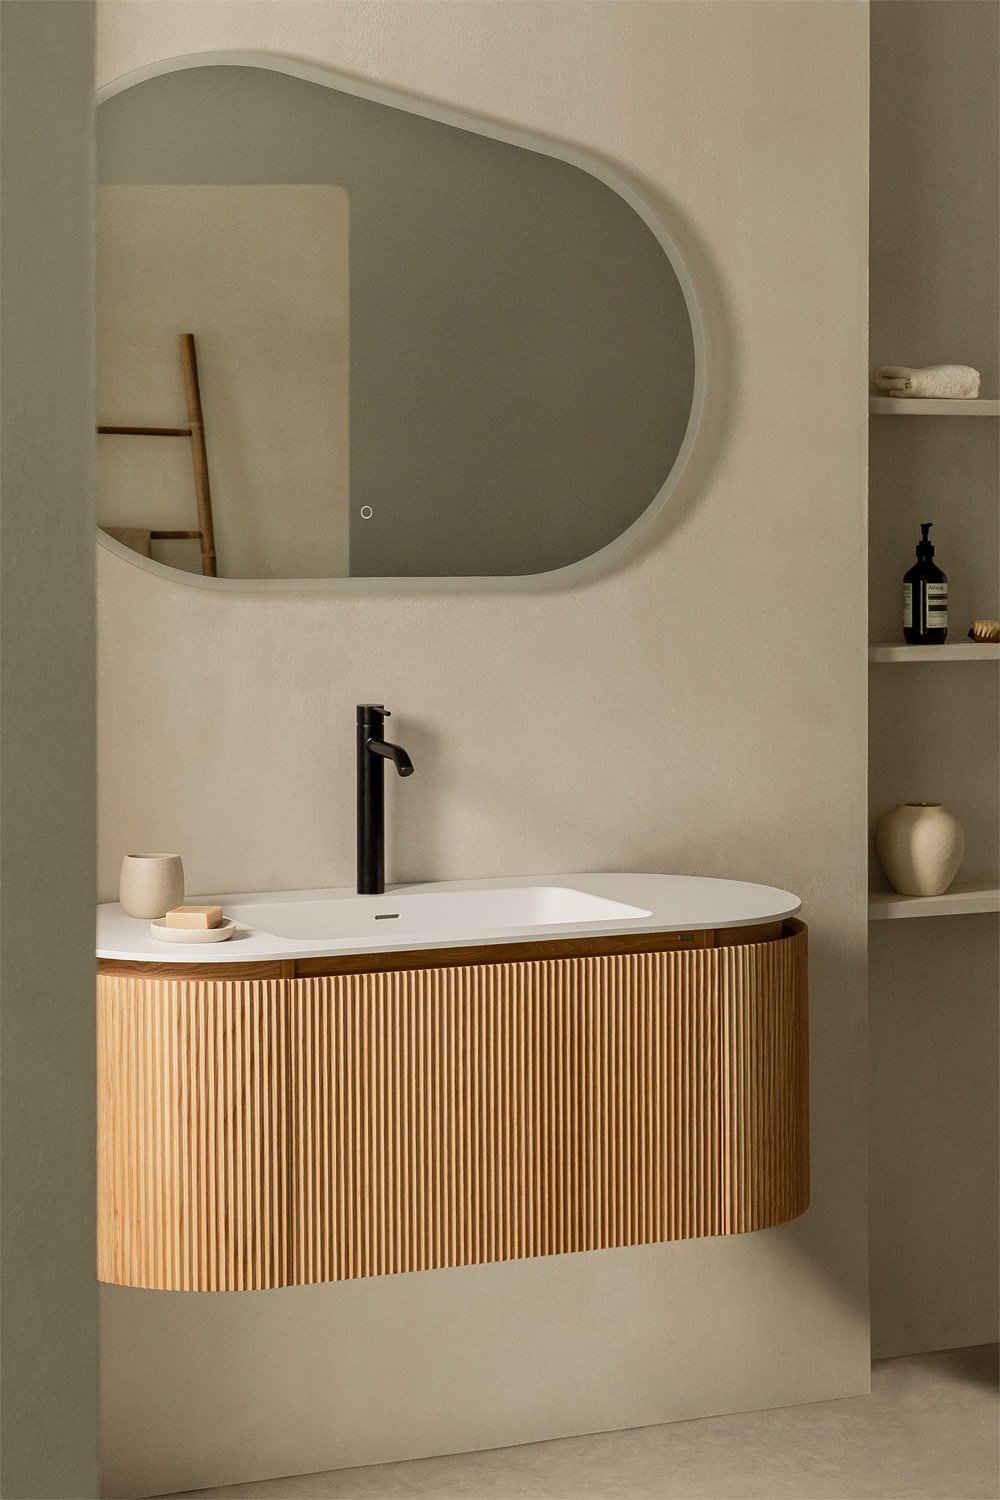 Podwieszane drewniane meble łazienkowe ze zintegrowaną umywalką Carsone , obrazek w galerii 1